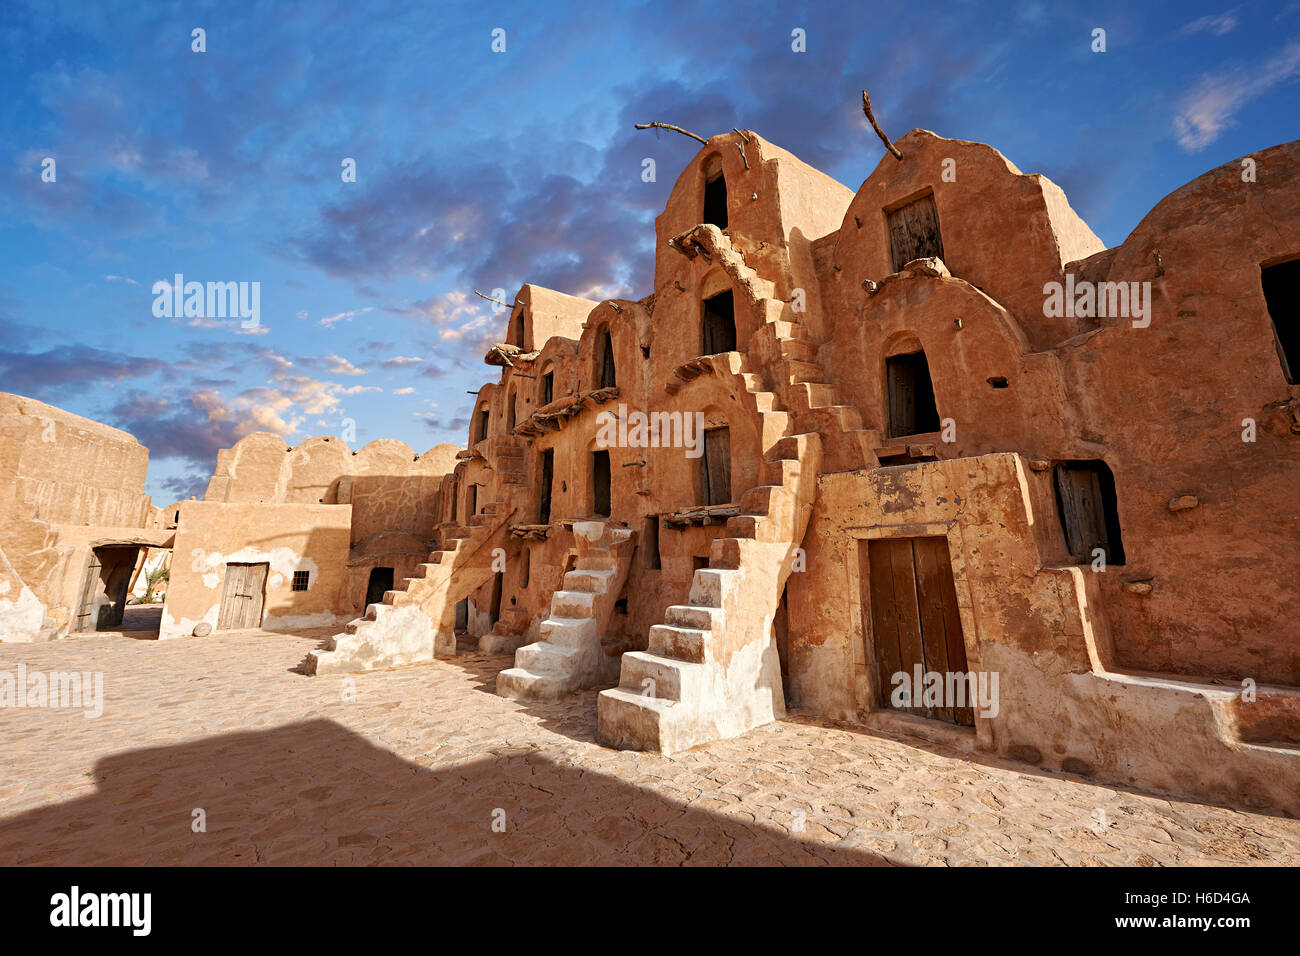 Ksar Ouled Soltane berbère, caves, grenier fortifié adobe ou ghorfas, nord du Sahara dans le district de Tataouine, Tunisie Banque D'Images